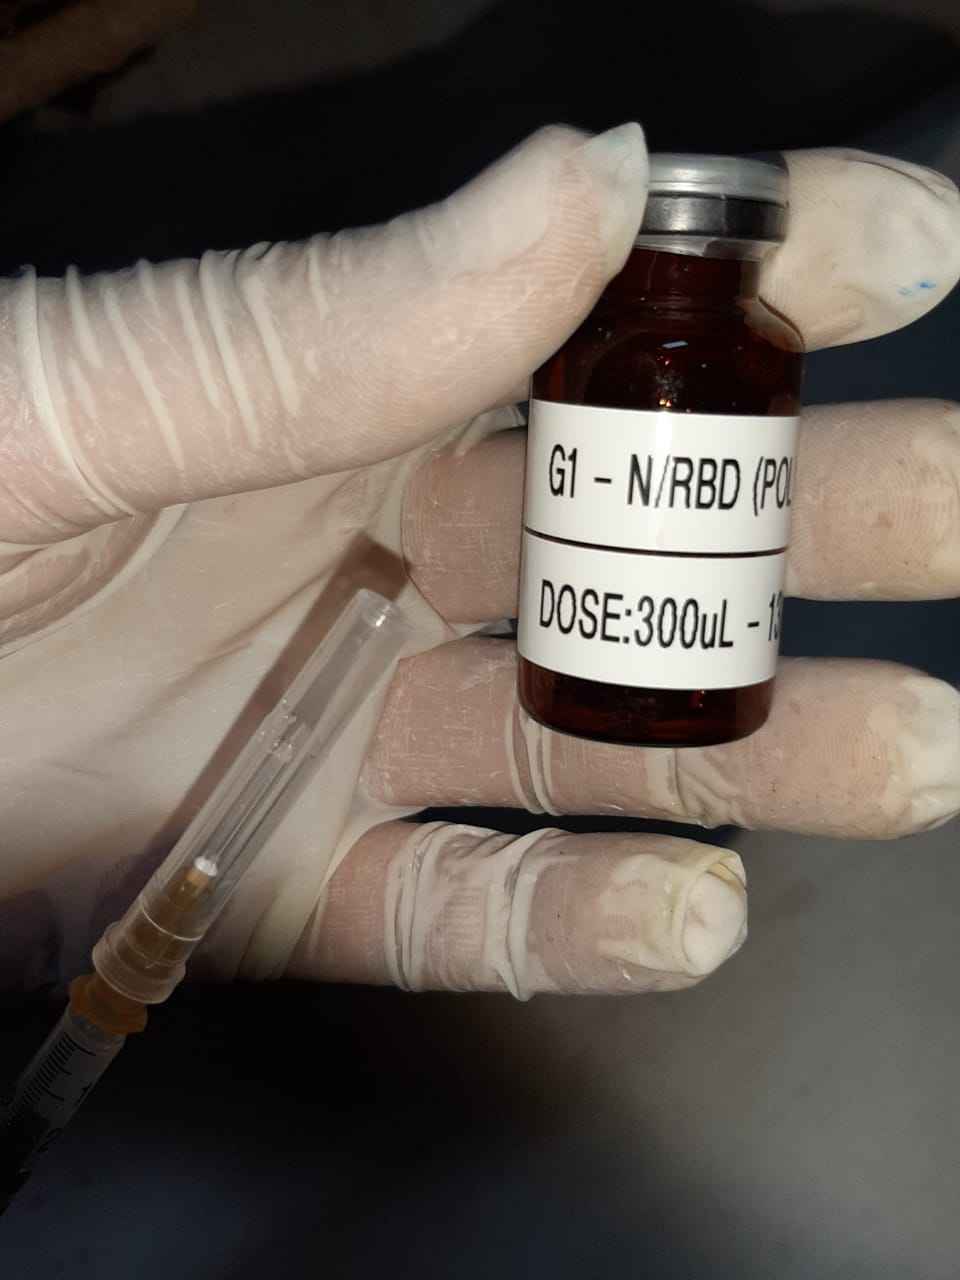 Vacina produzida pela UFMG avança para fase de testes em primatas. Previsão é que testes em humanos tenham início em outubro.